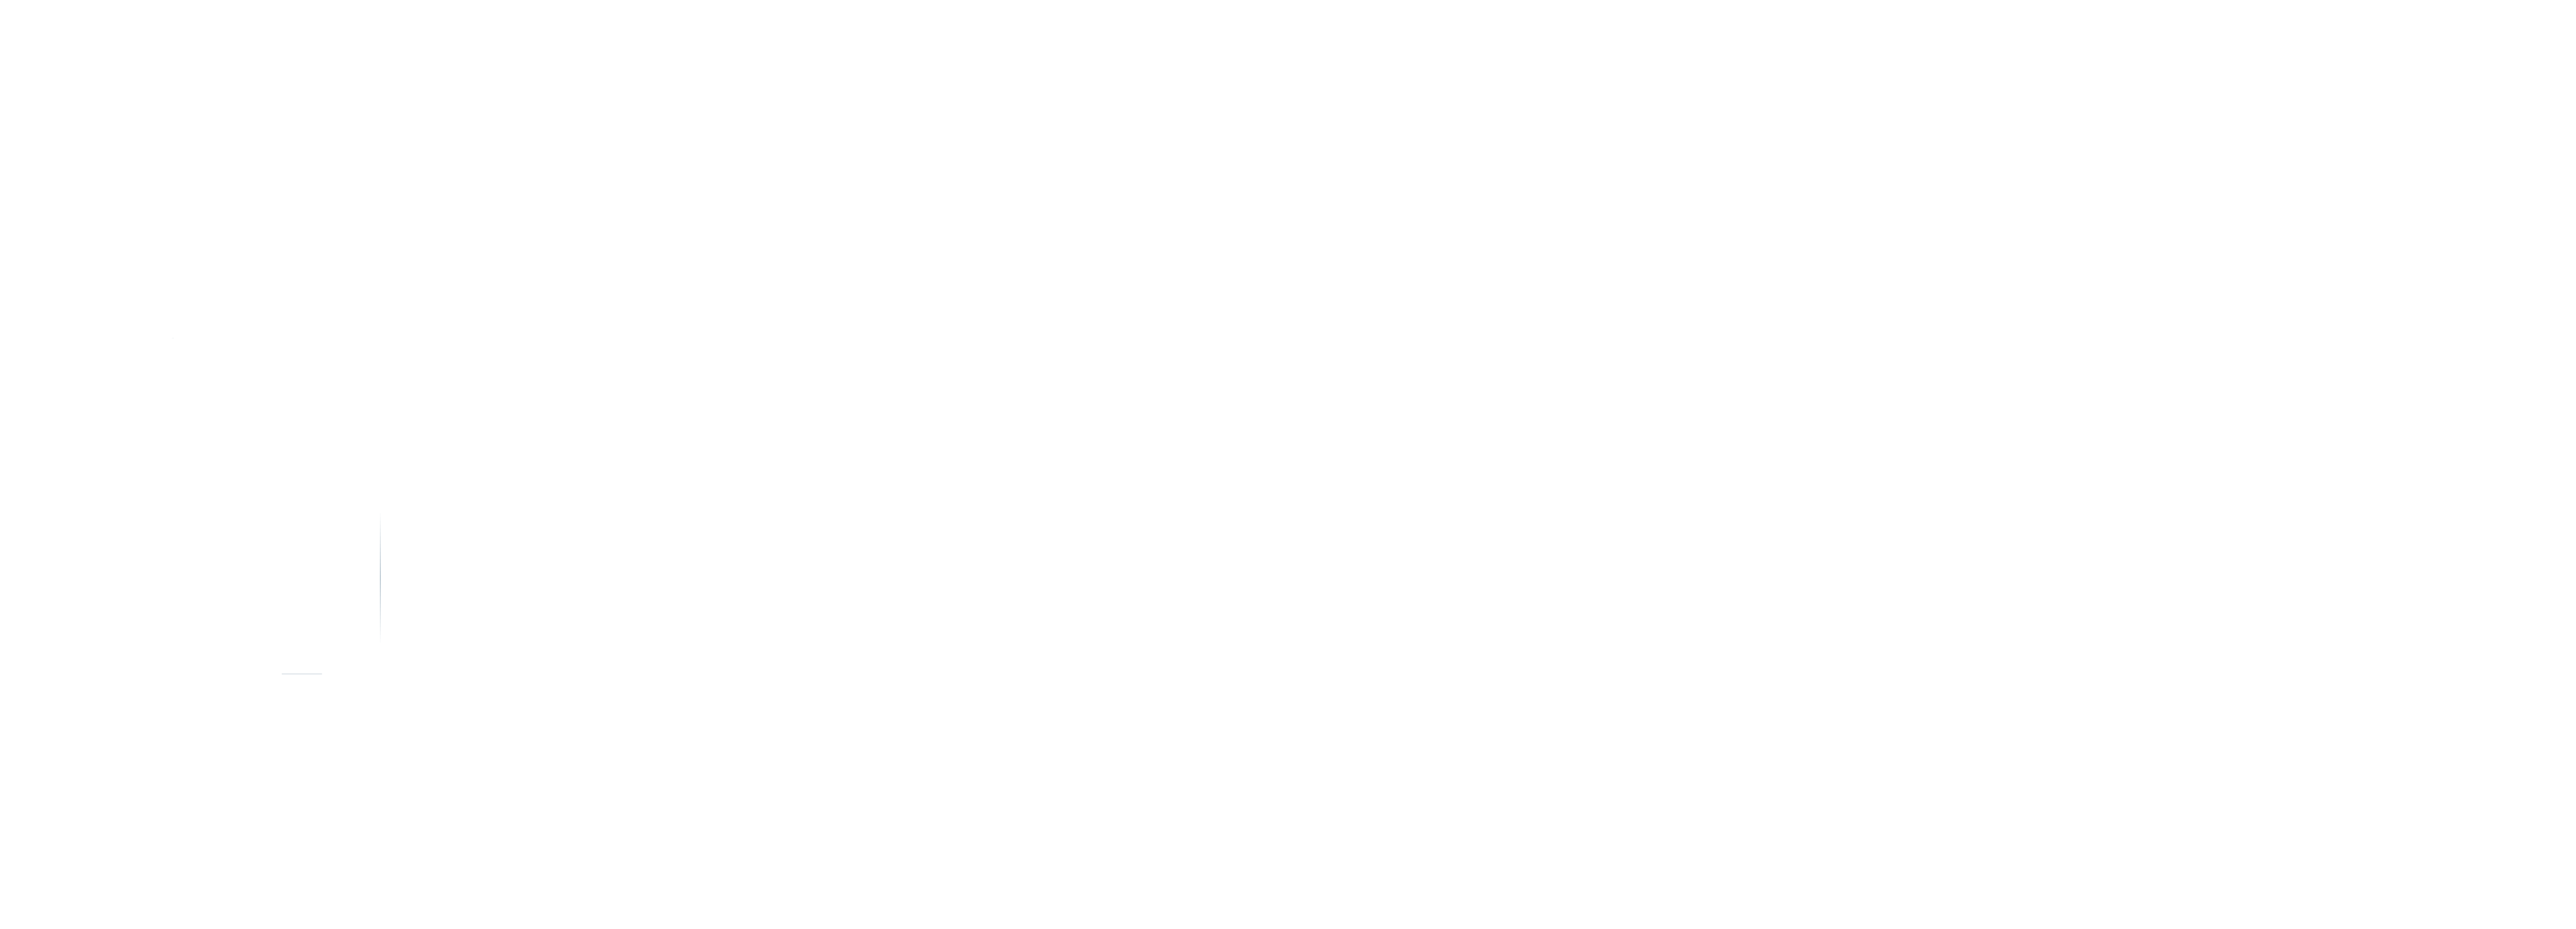 Telic Solutions